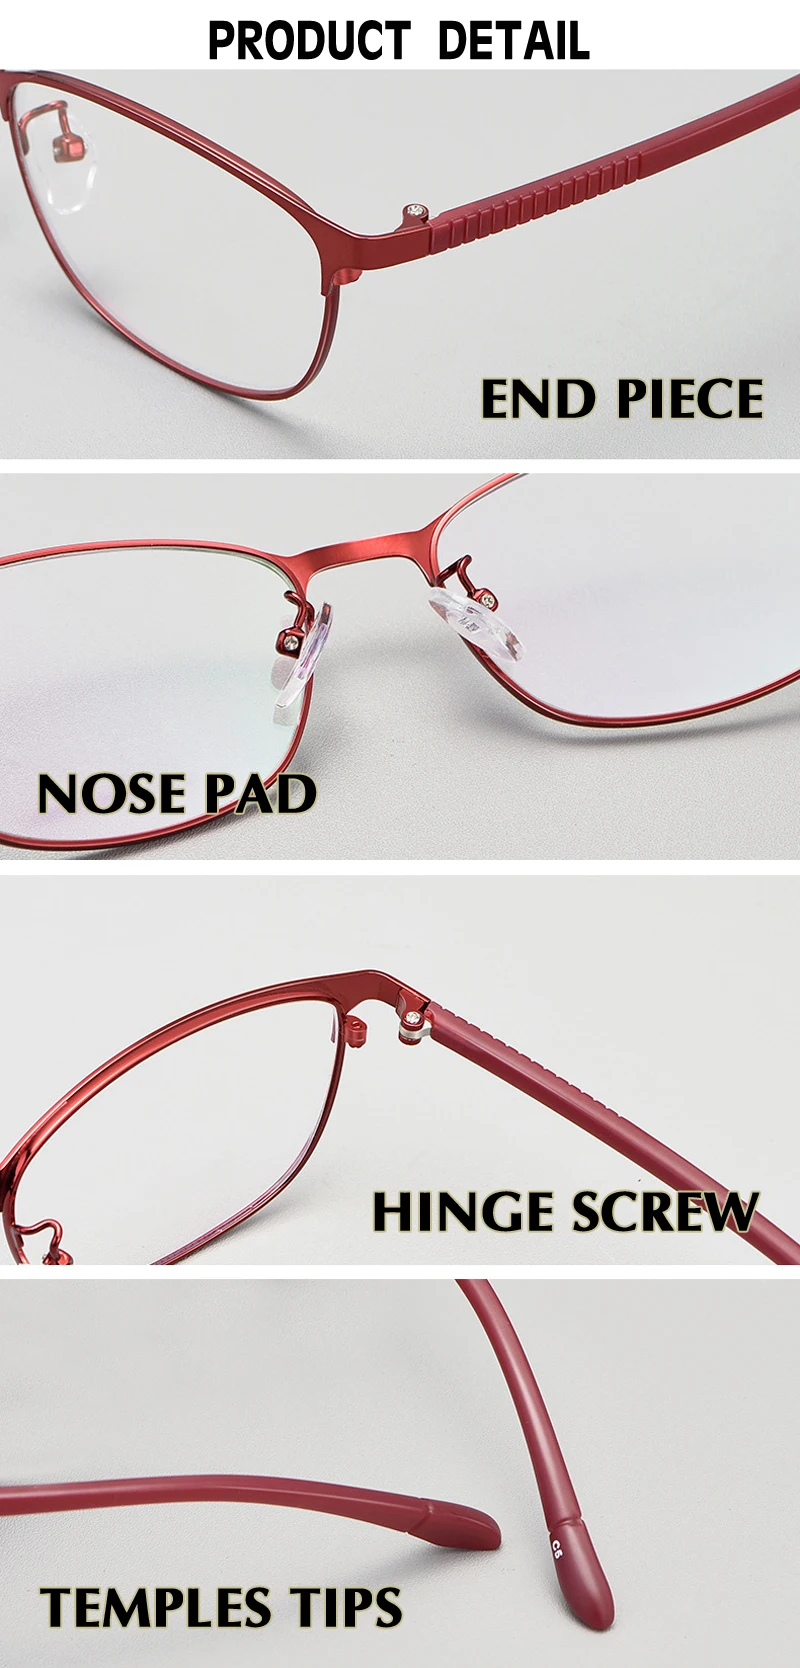 Красные рецептурные линзы используют свет гибкая рама корректирующие очки при близорукости рамка для женщин качественные очки